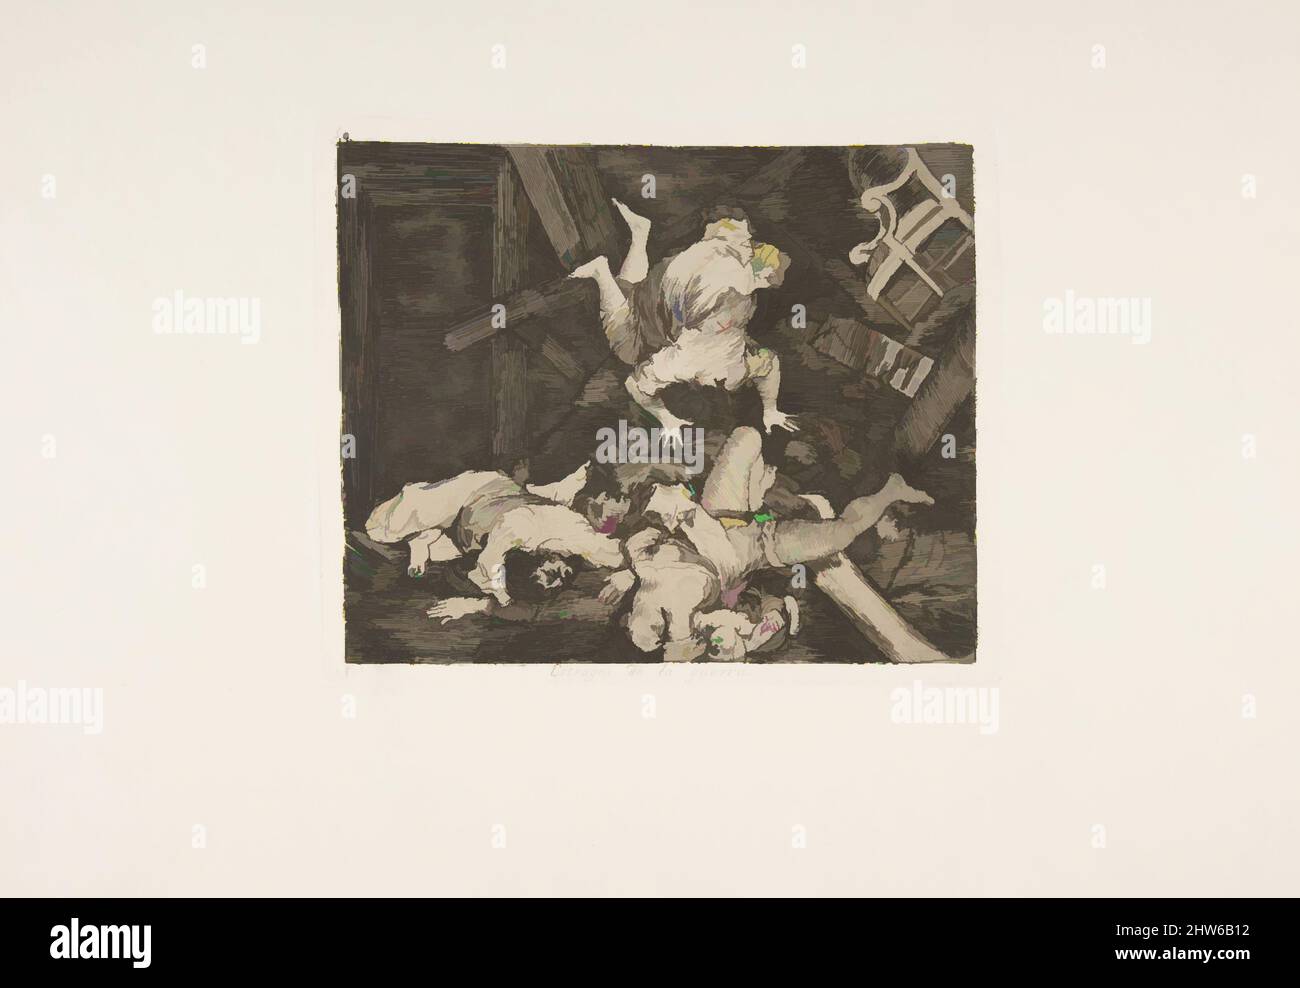 Art inspiré par la planche 30 de 'les désastres de la guerre' (Los Desastres de la Guerra):'ravages de la guerre' (Estragos de la guerra), 1810 (publié en 1863), Etching, Drypoint, burin et burnisher, Plaque : 5 1/2 × 6 5/8 po (14 × 16,8 cm), Prints, Goya (Francisco de Goya y Lucientes) (espagnol, oeuvres classiques modernisées par Artotop avec une touche de modernité. Formes, couleur et valeur, impact visuel accrocheur sur l'art émotions par la liberté d'œuvres d'art d'une manière contemporaine. Un message intemporel qui cherche une nouvelle direction créative. Artistes qui se tournent vers le support numérique et créent le NFT Artotop Banque D'Images